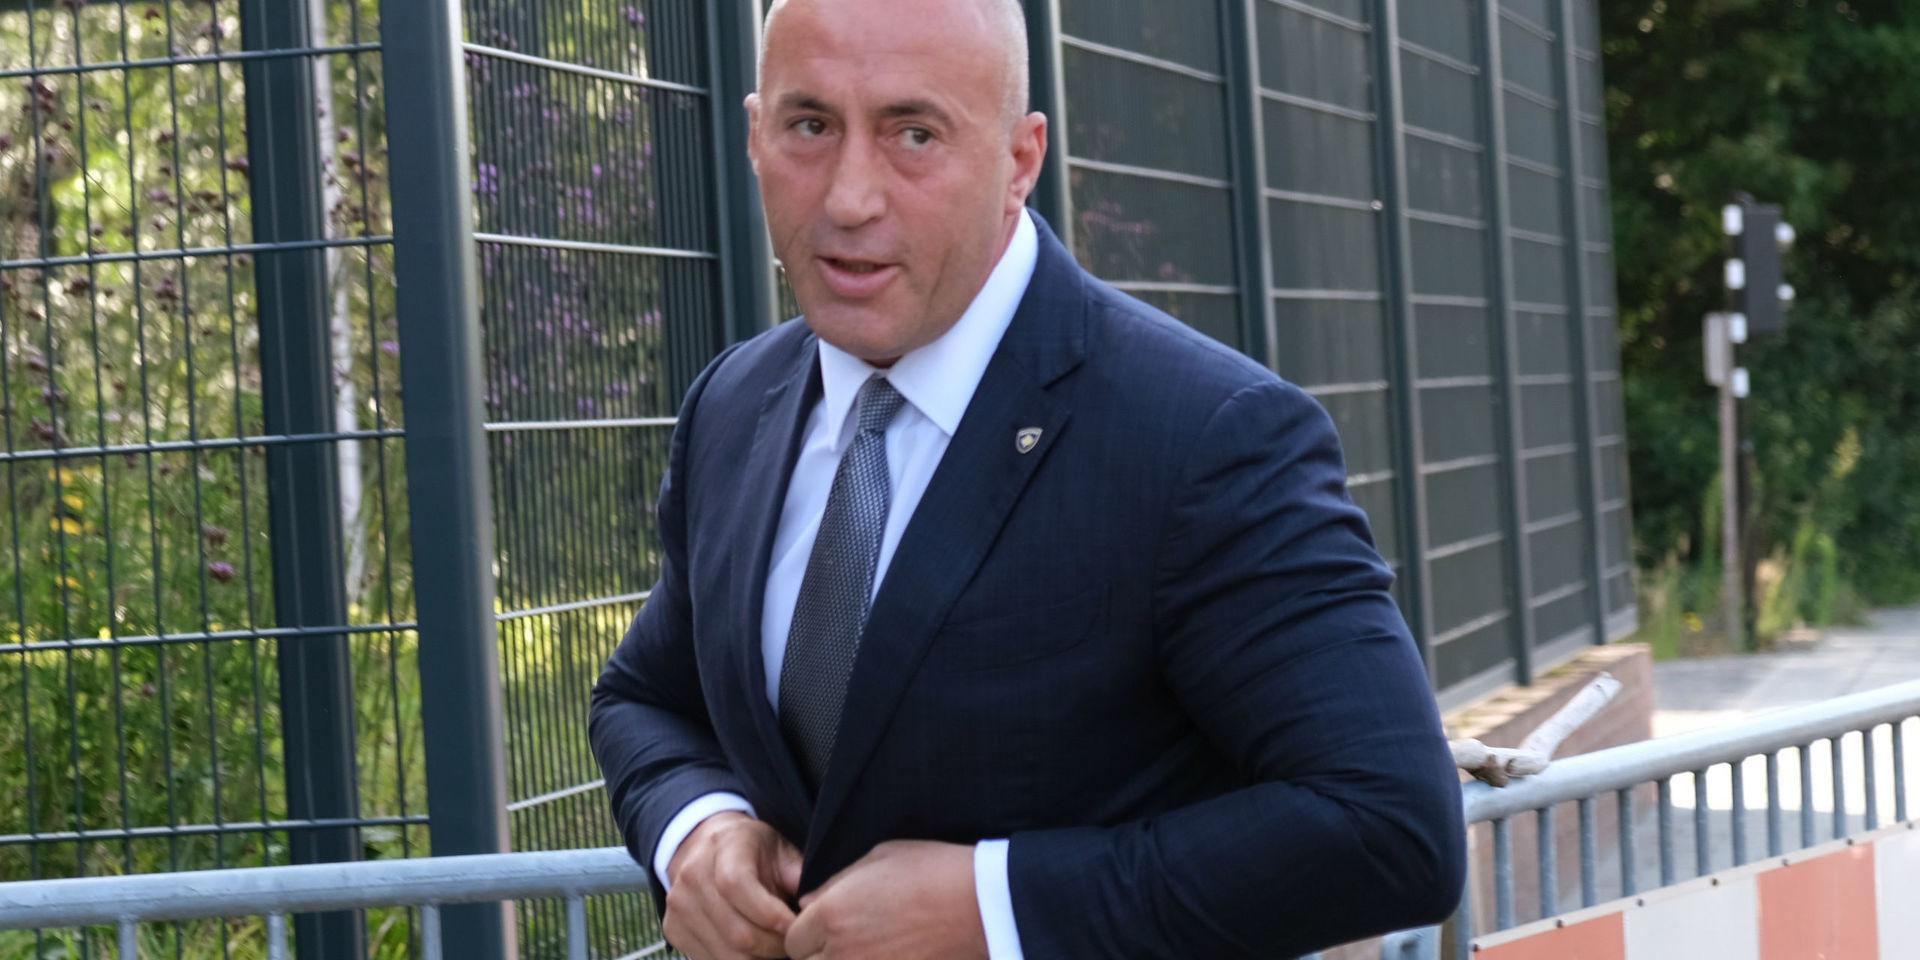 Kosovos tidigare premiärminister Ramush Haradinaj avgick tidigare i veckan. Arkivbild.